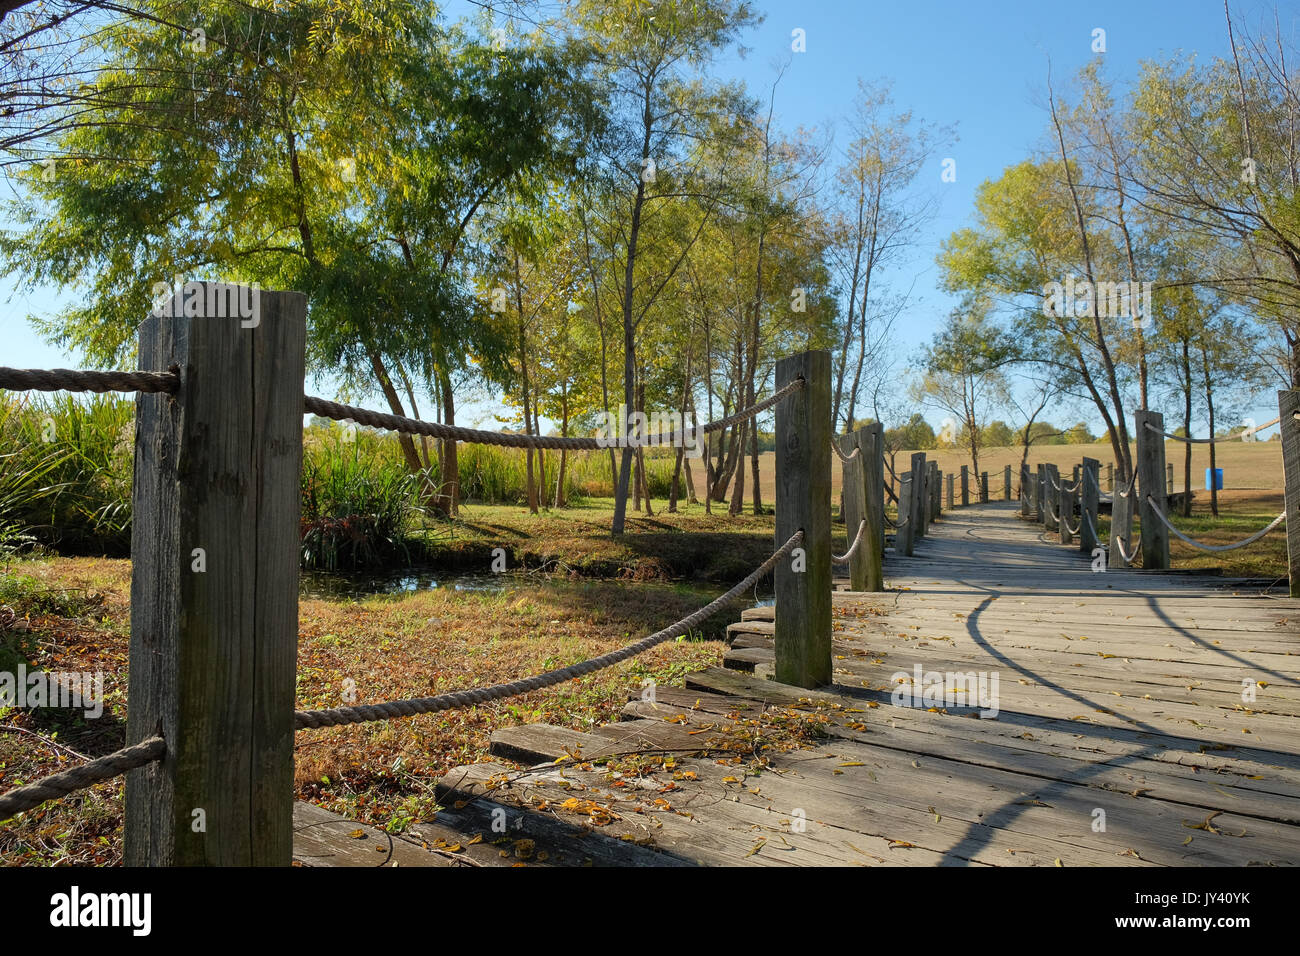 Sendero de madera en blount cultural park, Montgomery, Alabama, EE.UU. Esta pieza está hecha de madera y cruza un pequeño arroyo que lleva al lago. Foto de stock